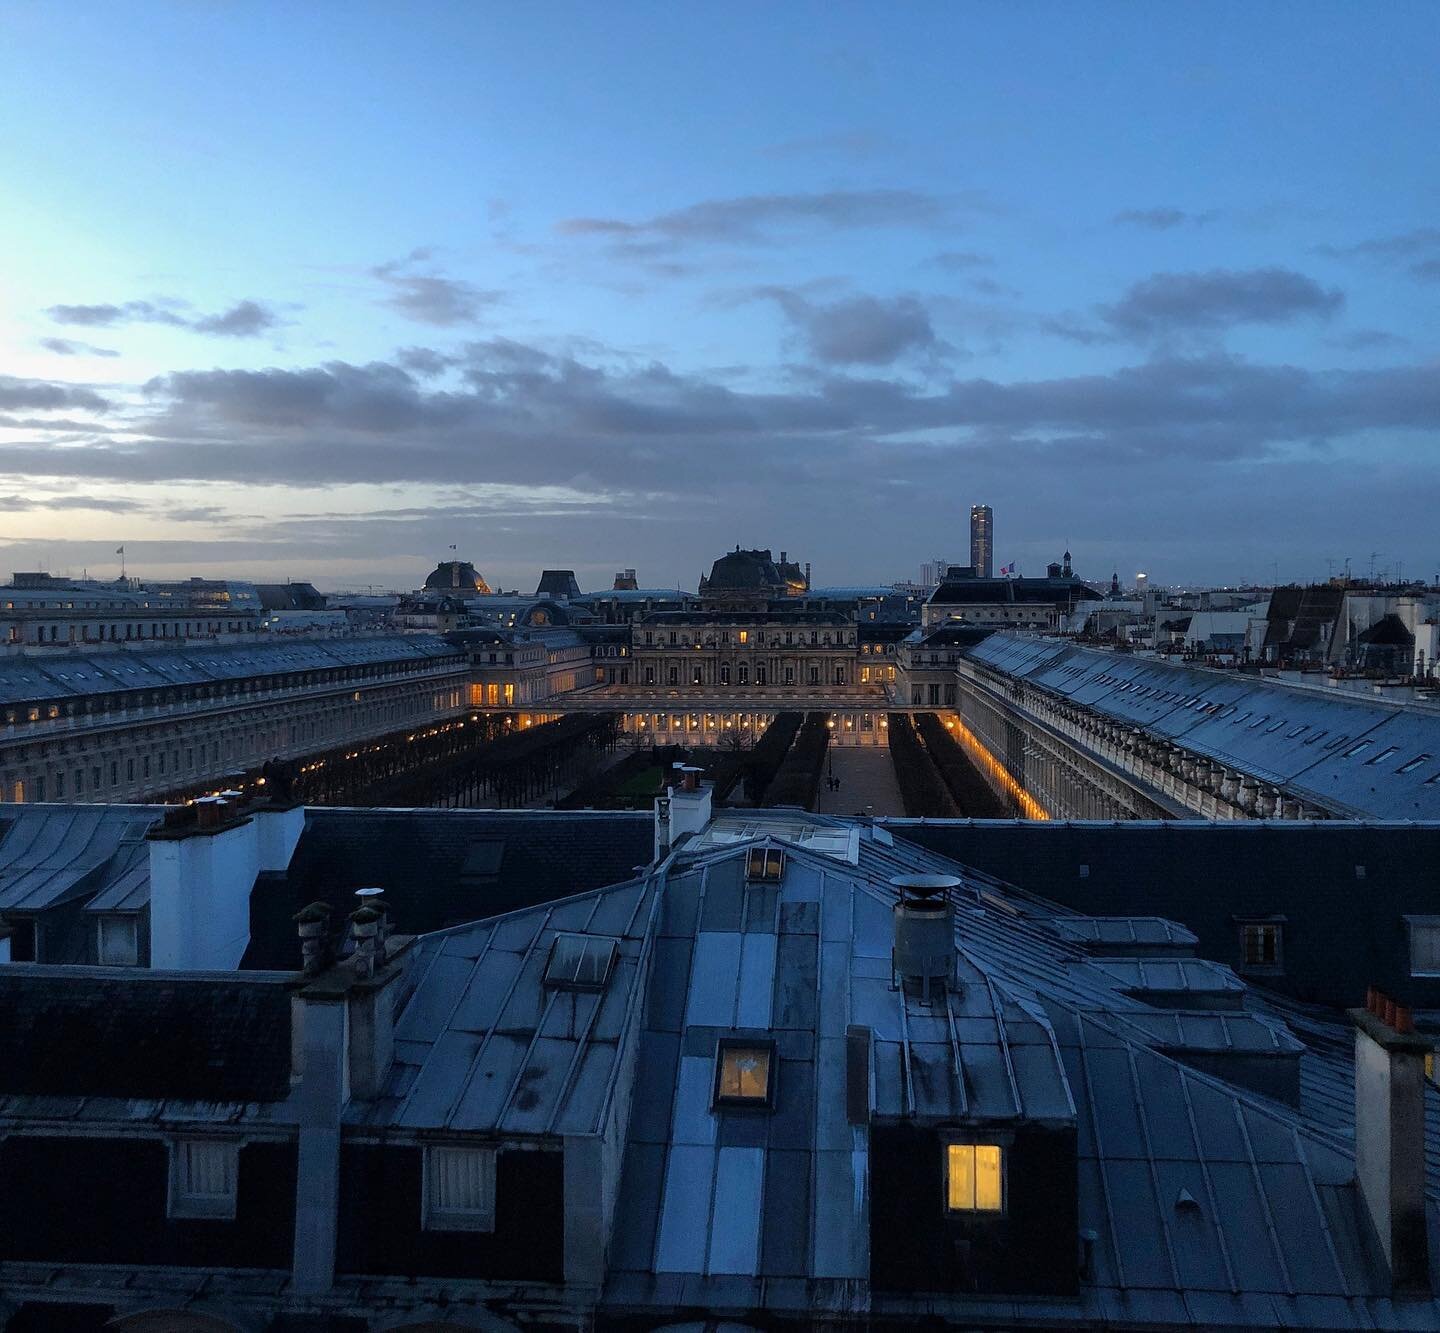 Nouveau jour, nouvelle perspective sur le jardin du Palais Royal. 6h du matin sur les toits de Mac&eacute;o 15 rue des Petits Champs

#palaisroyal #louvre #paris #paris1 #nouvelleperspective #lejourseleve #avantlespigeons #view #restaurantparis